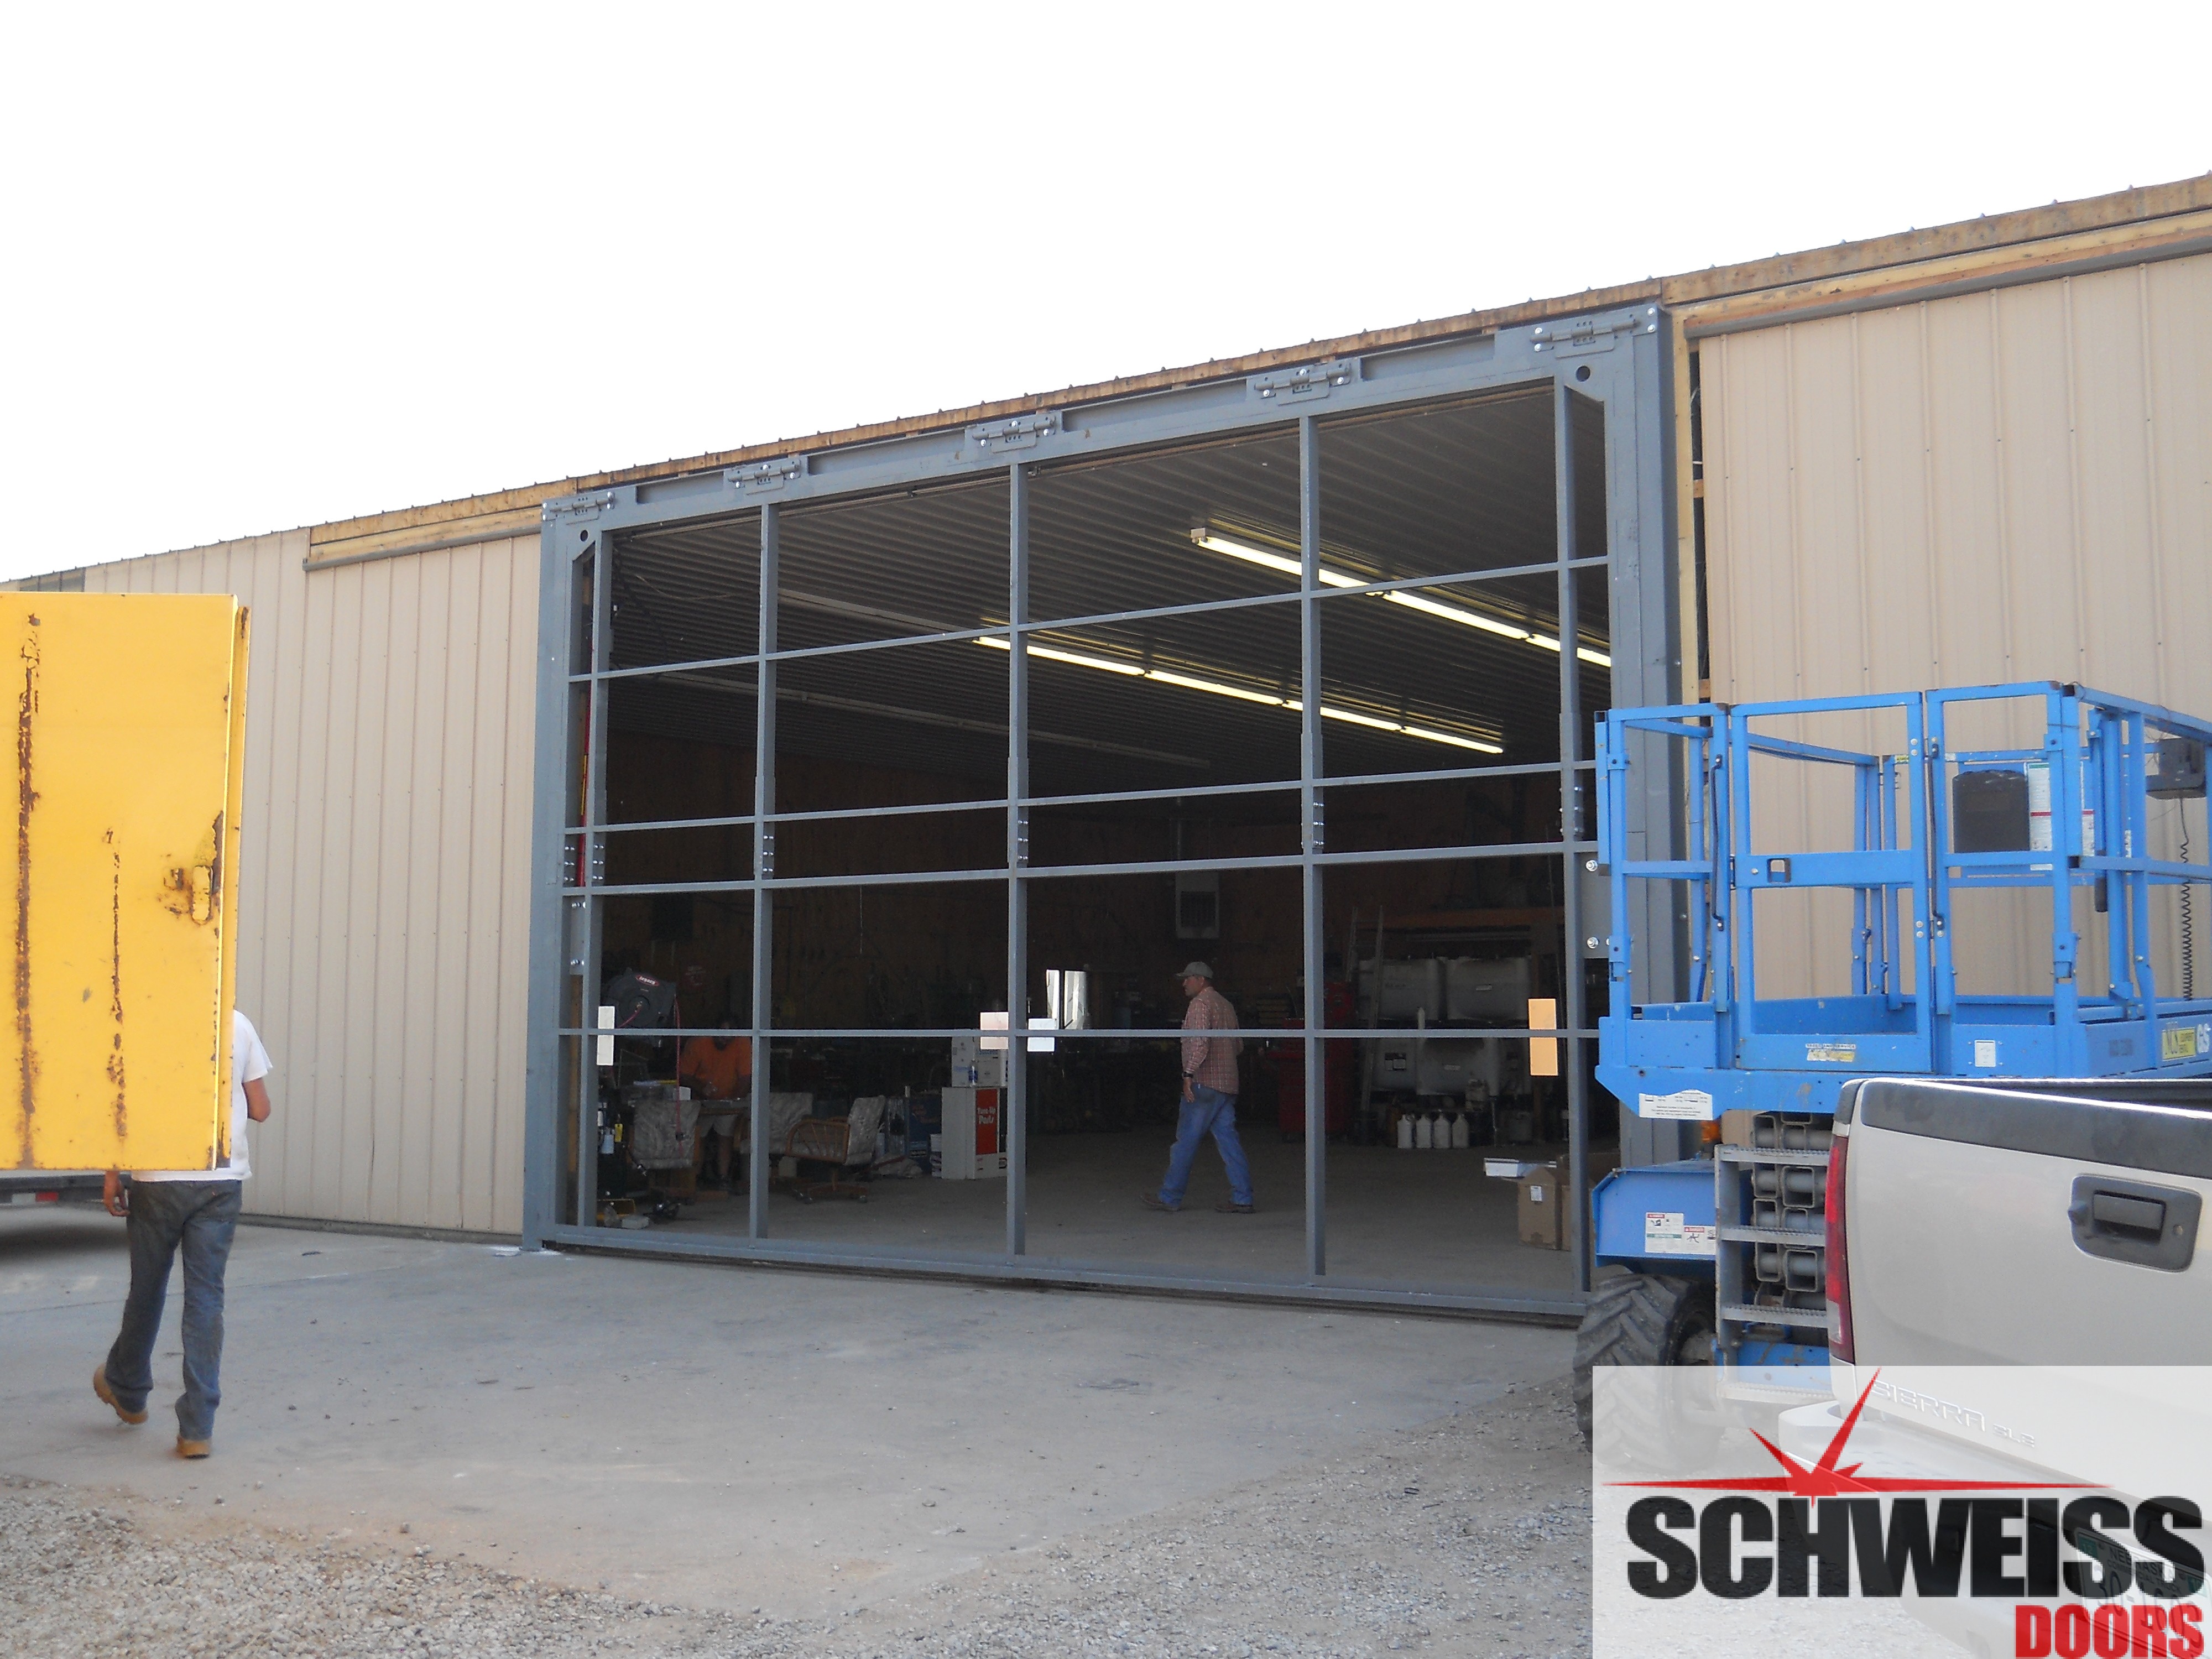 Strong hydraulic door framework in every Schweiss door